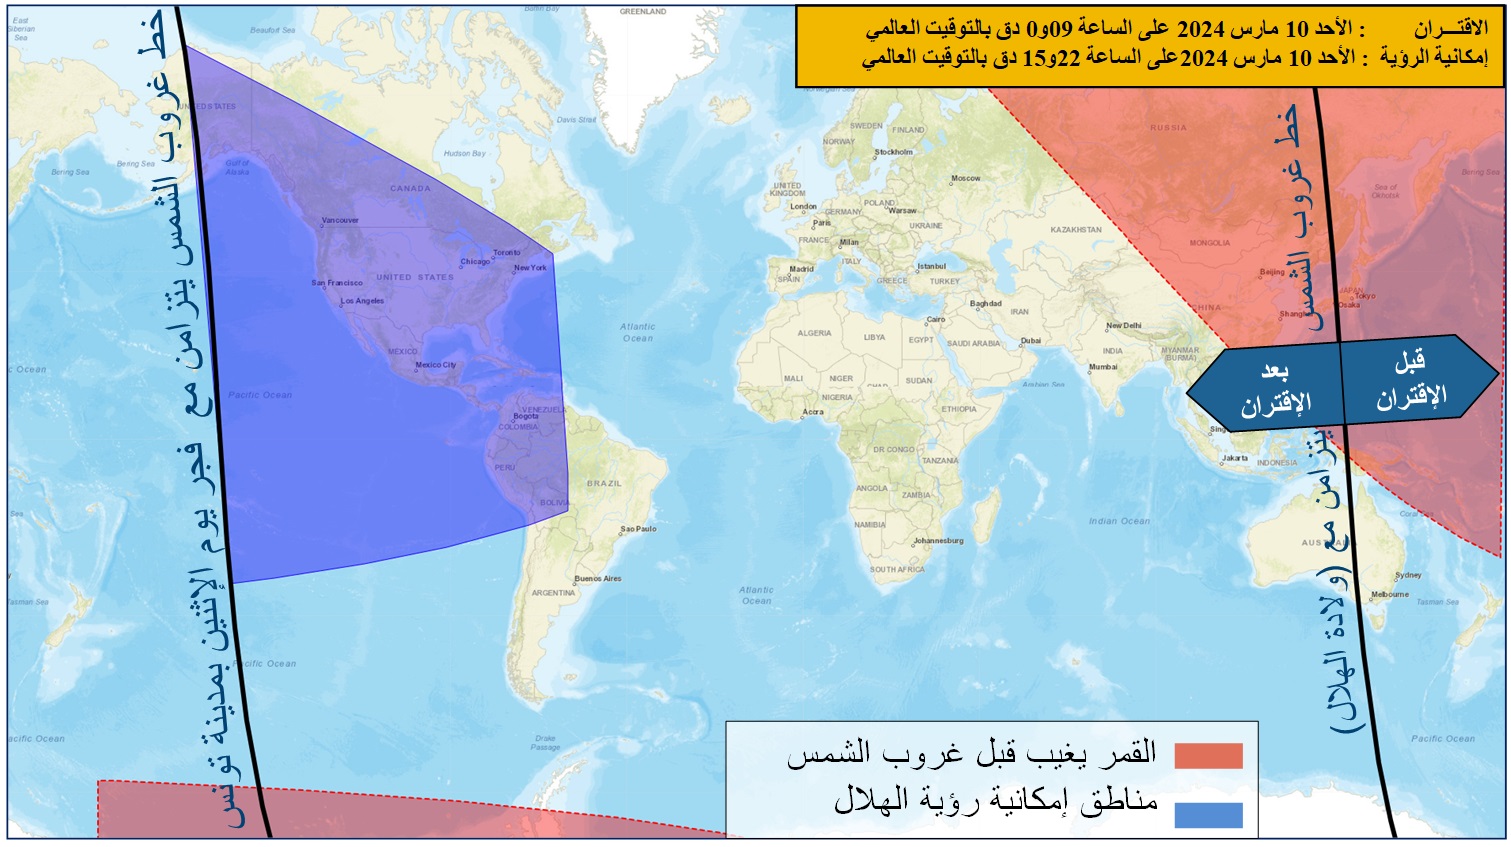 صورة  4 : مناطق إمكانية رؤية هلال شهر رمضان لسنة 1445 هجري  بعد غروب الشمس بالعالم يوم الأحد 10 مارس 2024 والمناطق التي يمكن بها رؤية الهلال قبل فجر يوم الاثنين 11 مارس 2024 بالنسبة لمدينة تونس.